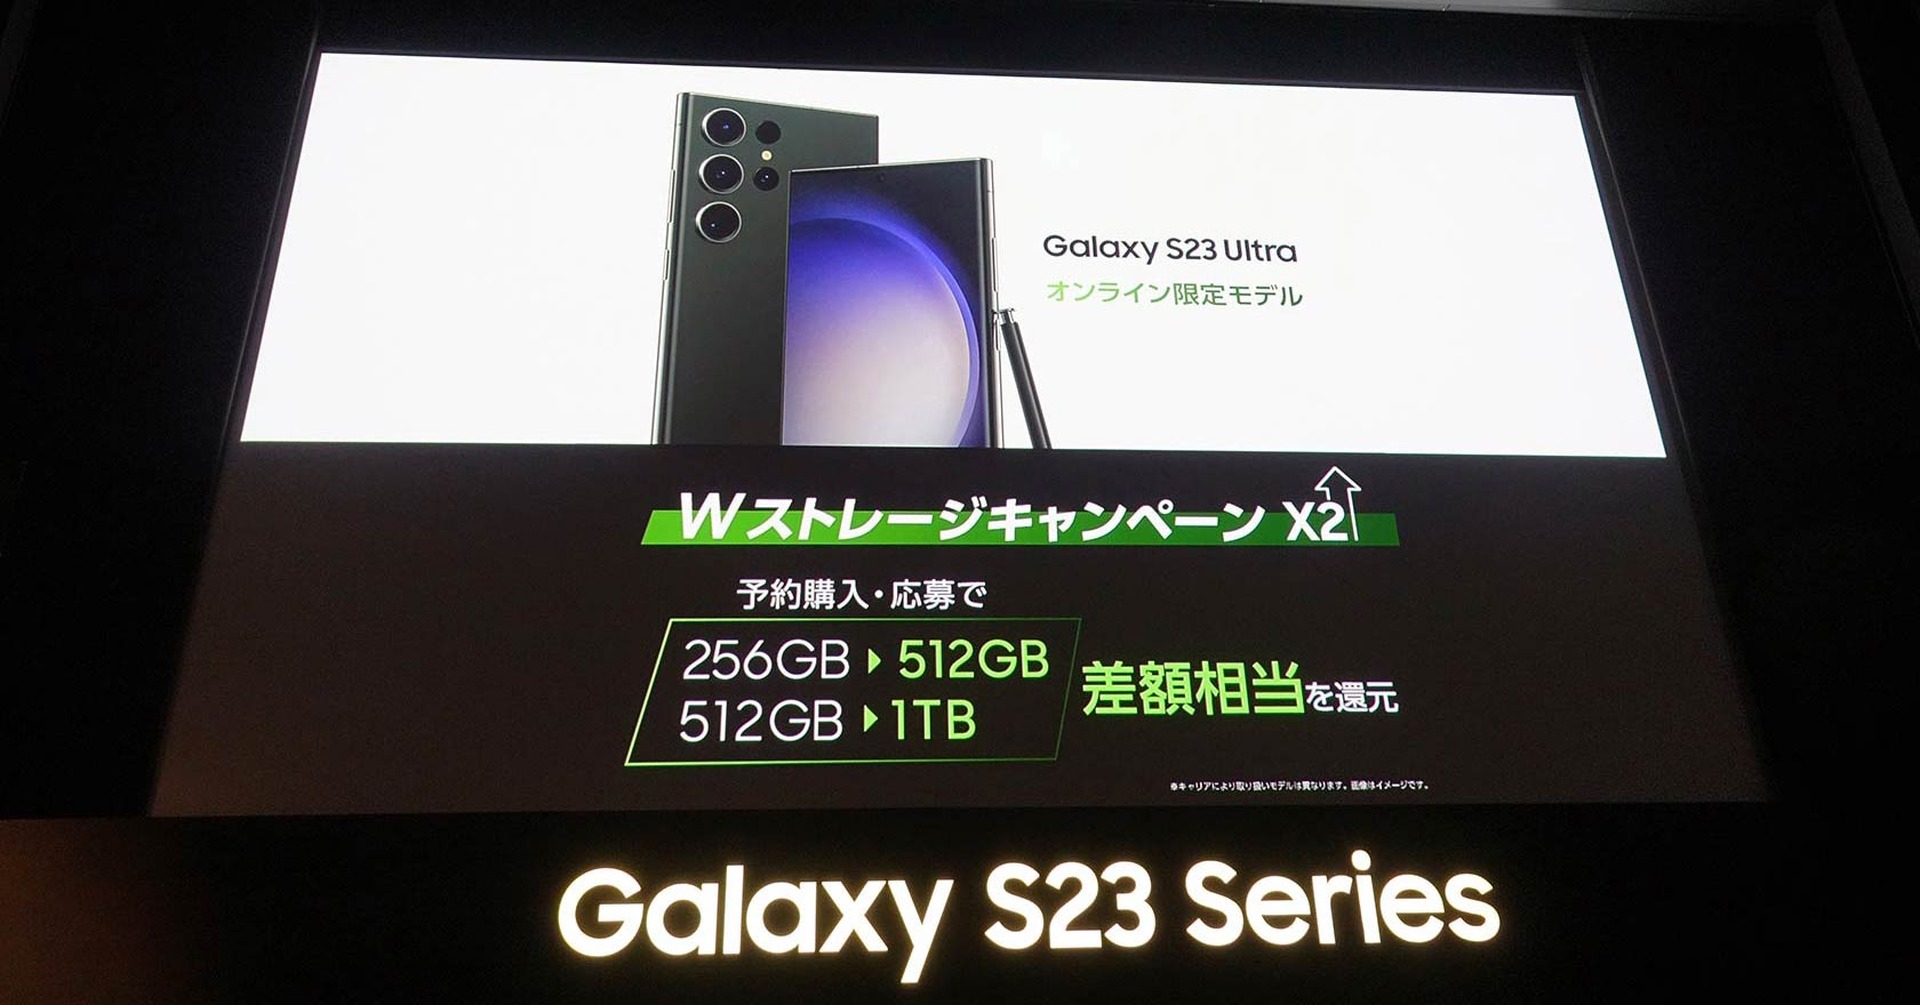 海外で好調のGalaxy S23シリーズ、日本では販路拡大とオンライン販売